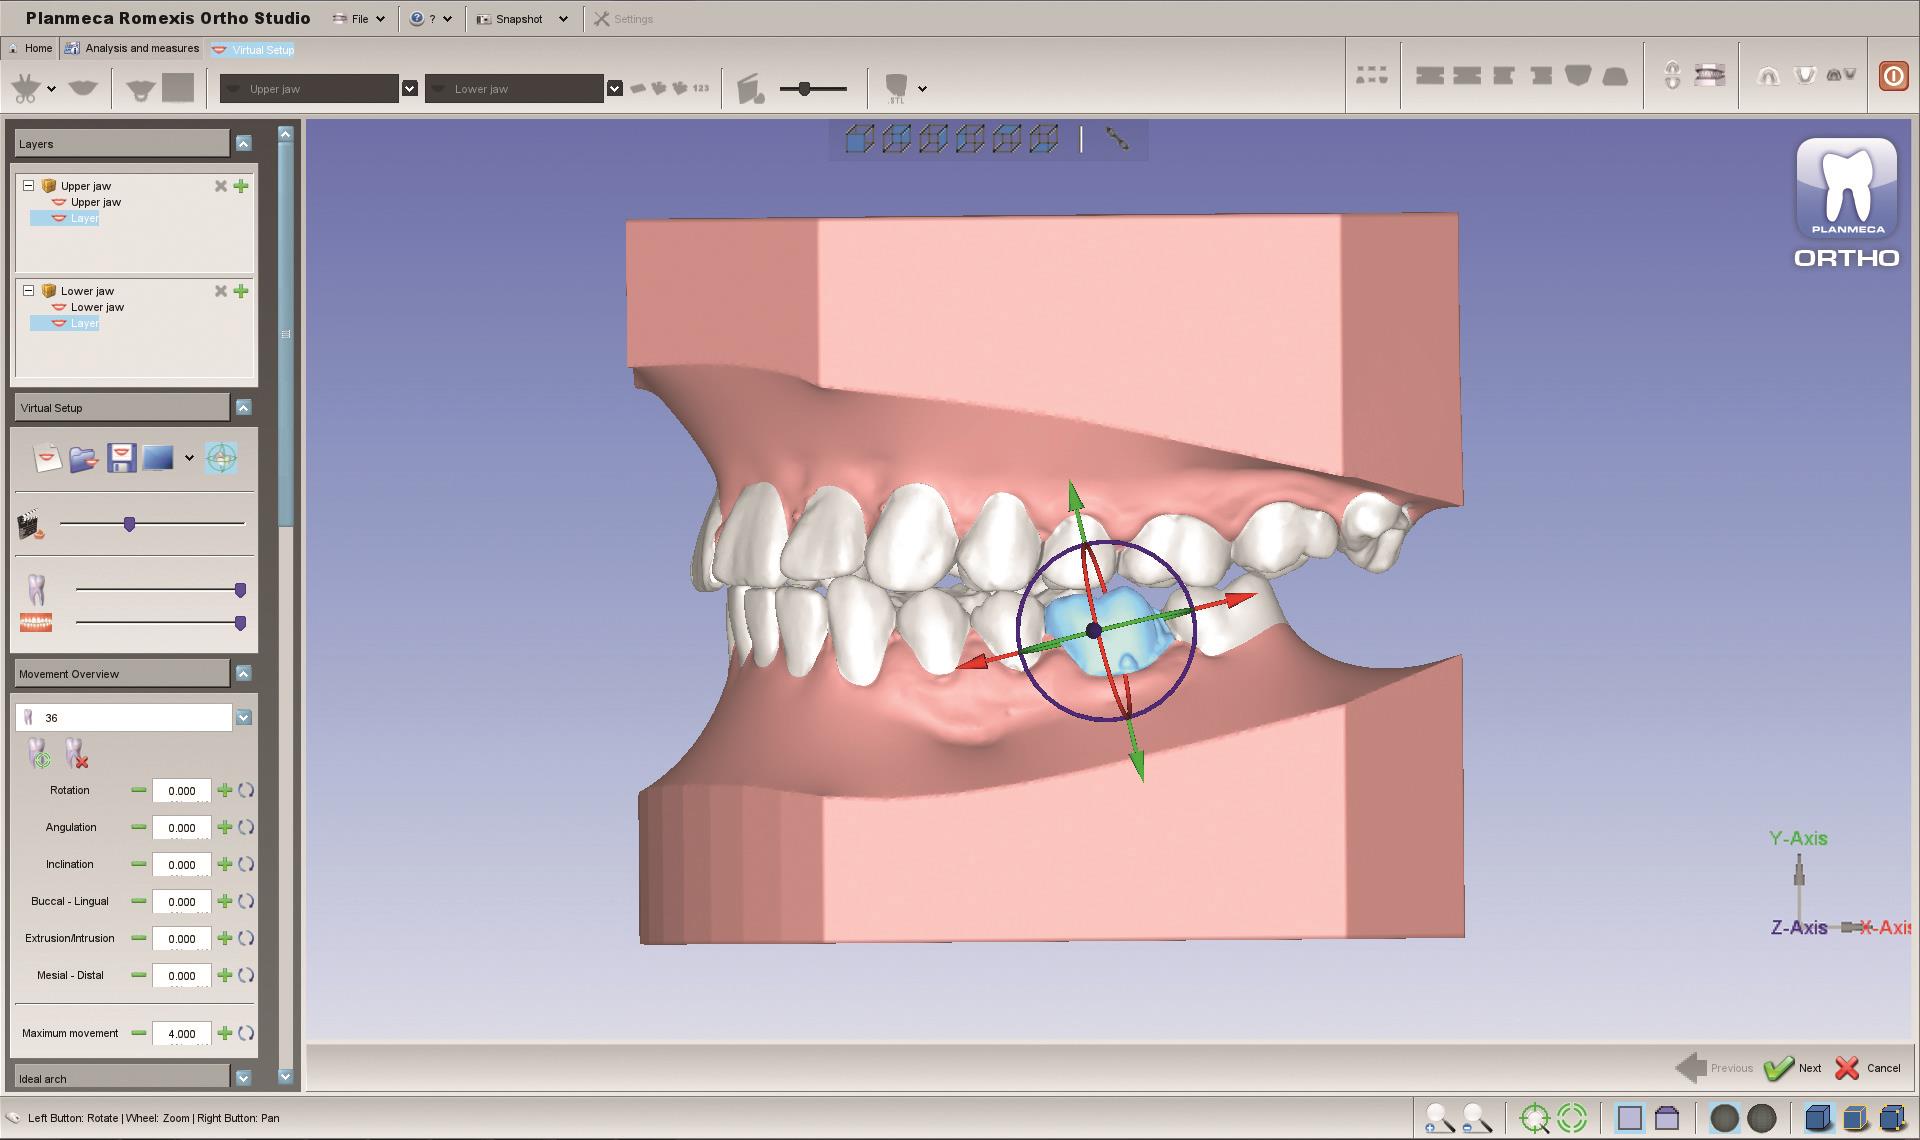 Planmeca wprowadza nowe narzędzia 3D dla pracowni dentystycznych i ortodontycznych